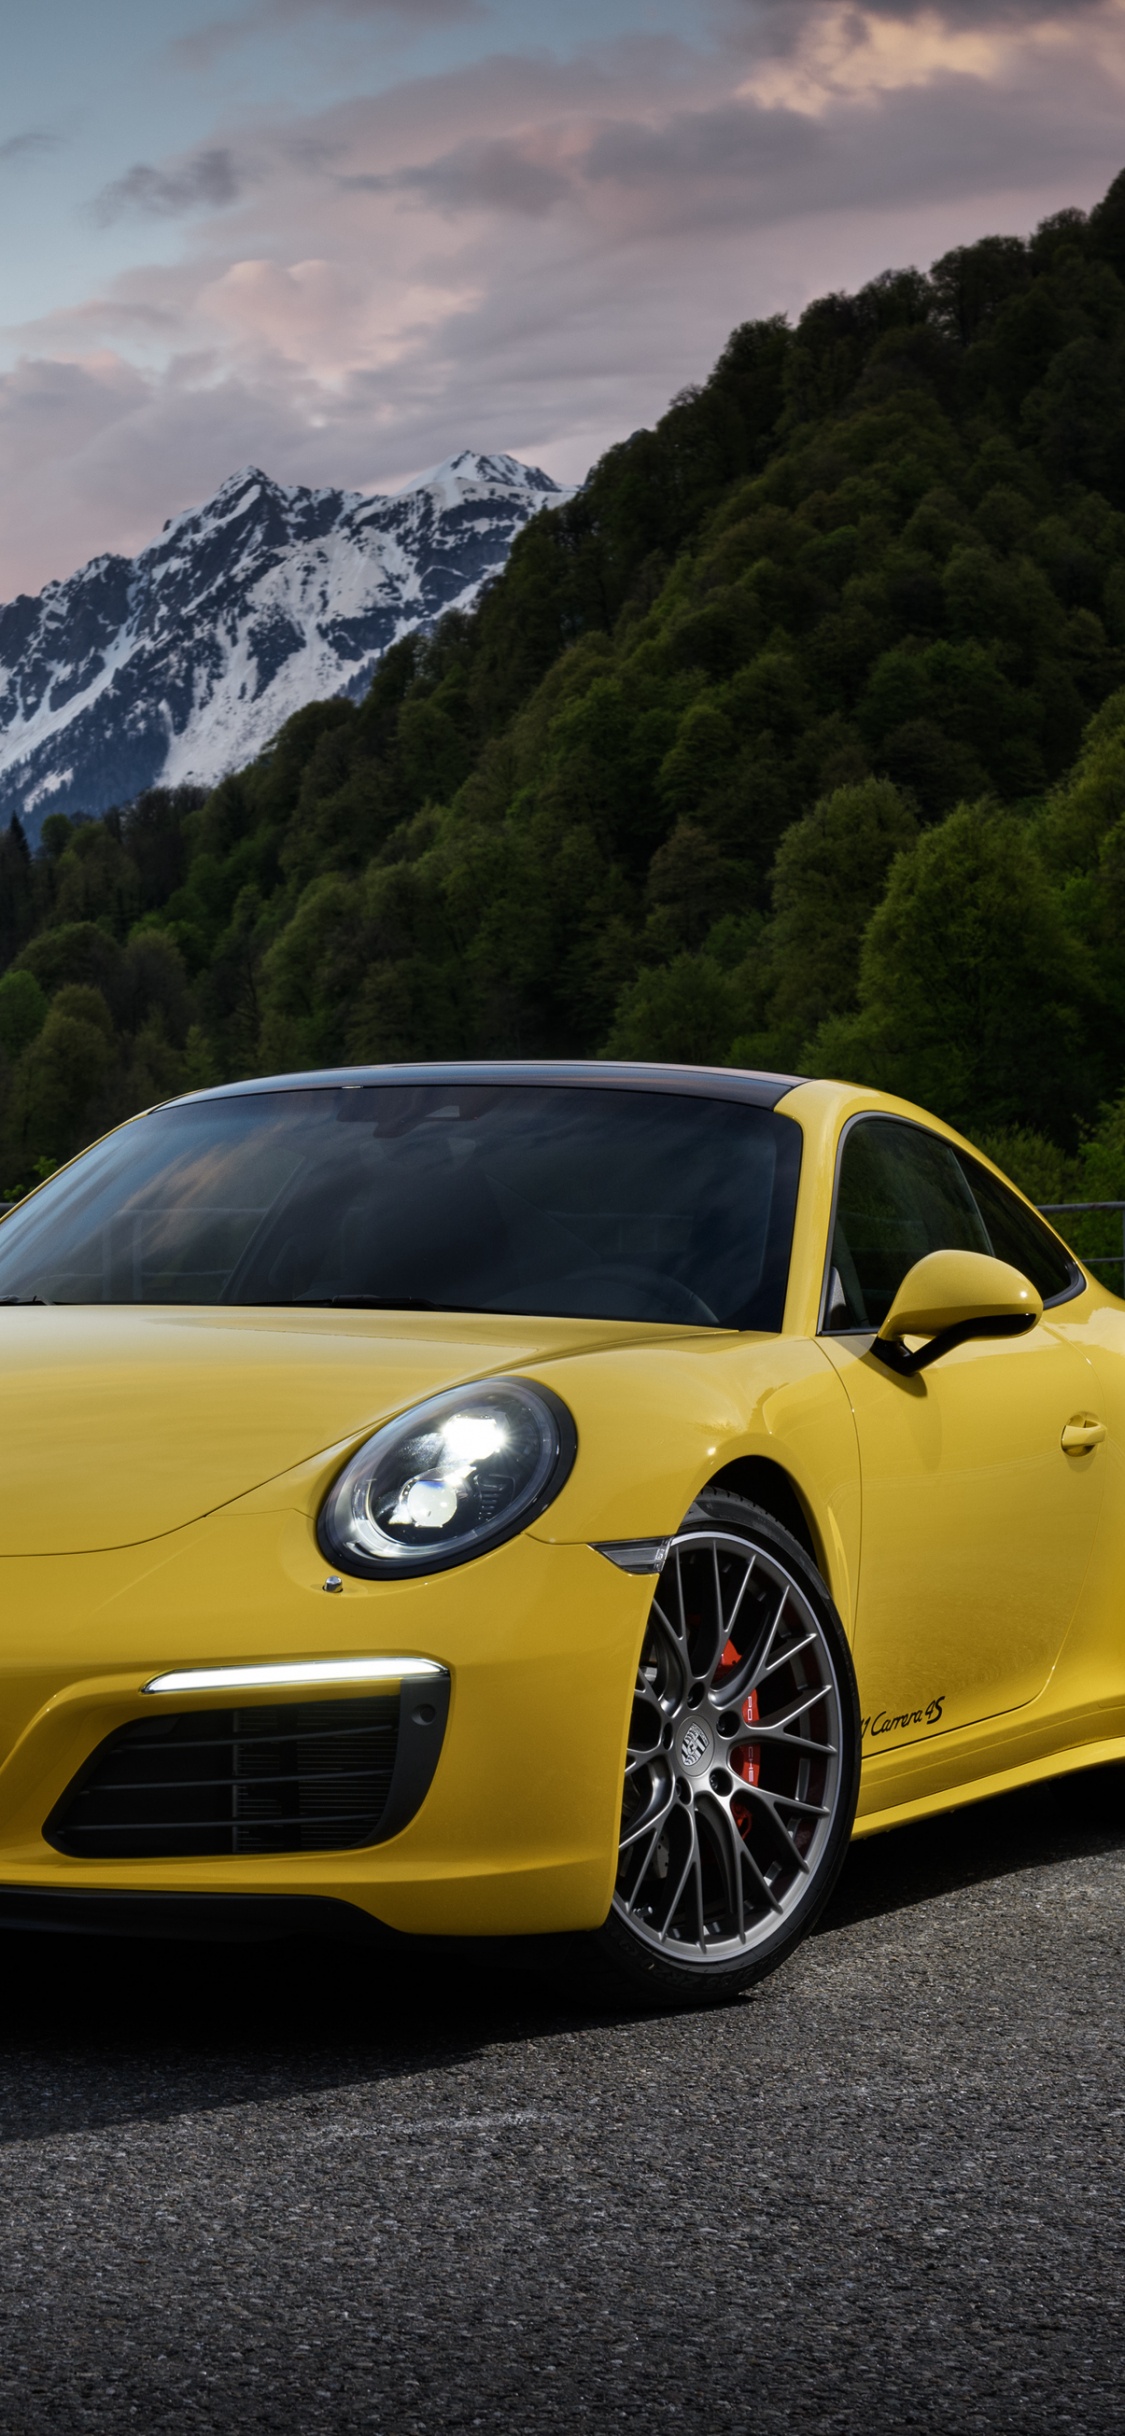 Porsche 911 Jaune Sur Route Près de la Montagne Pendant la Journée. Wallpaper in 1125x2436 Resolution